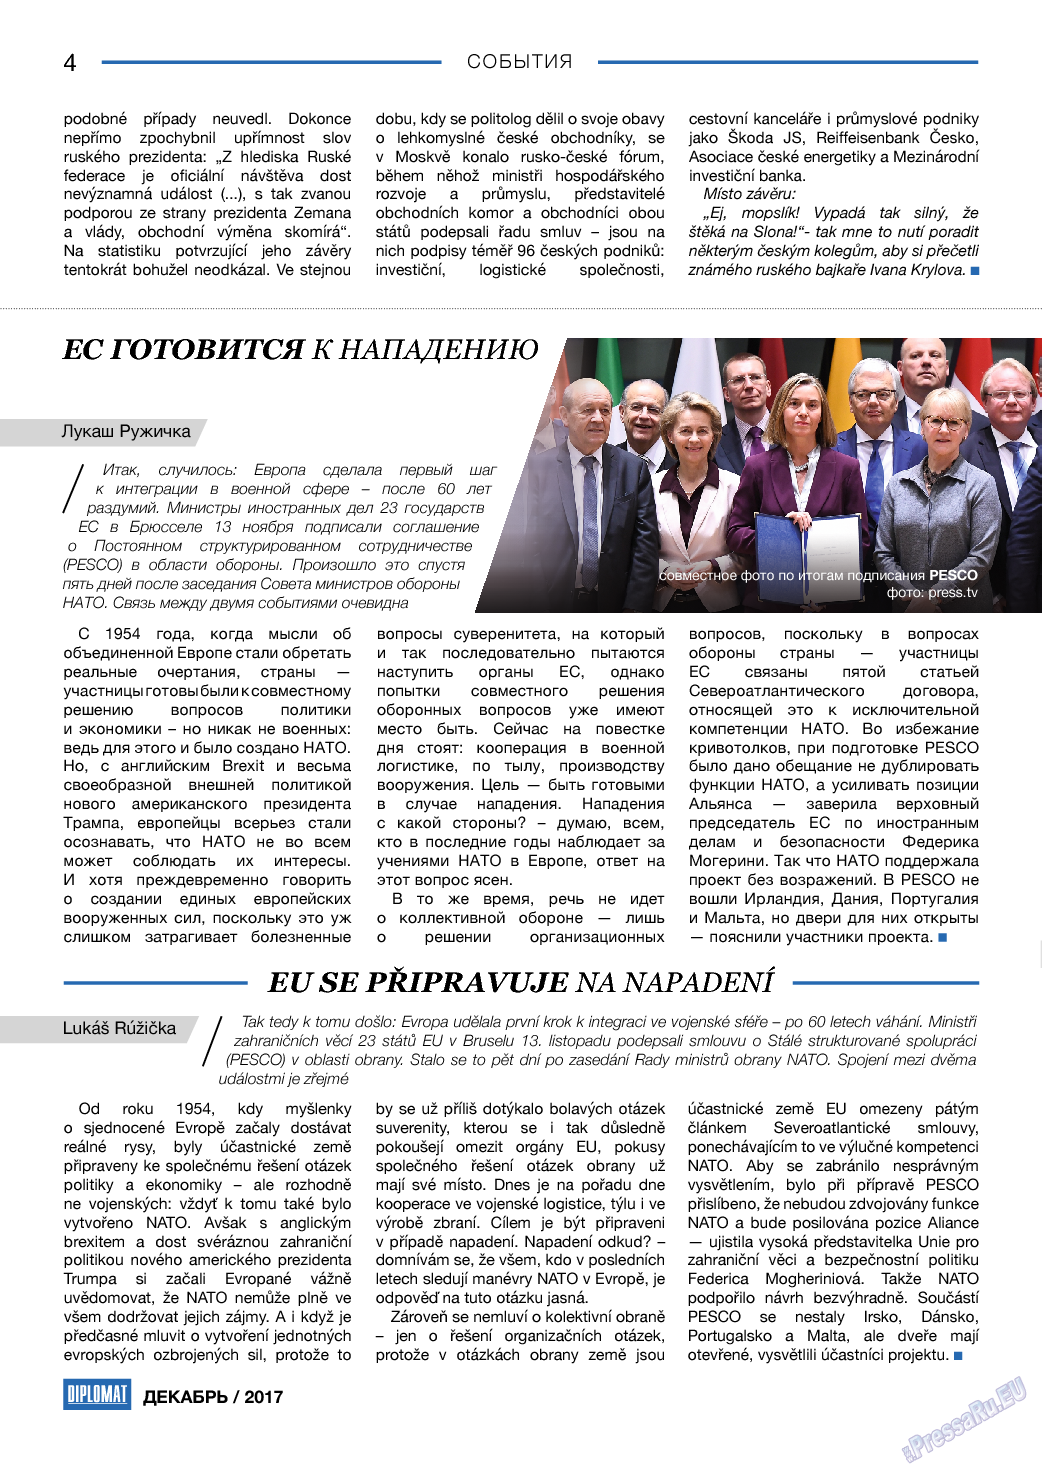 Diplomat, газета. 2017 №99 стр.4